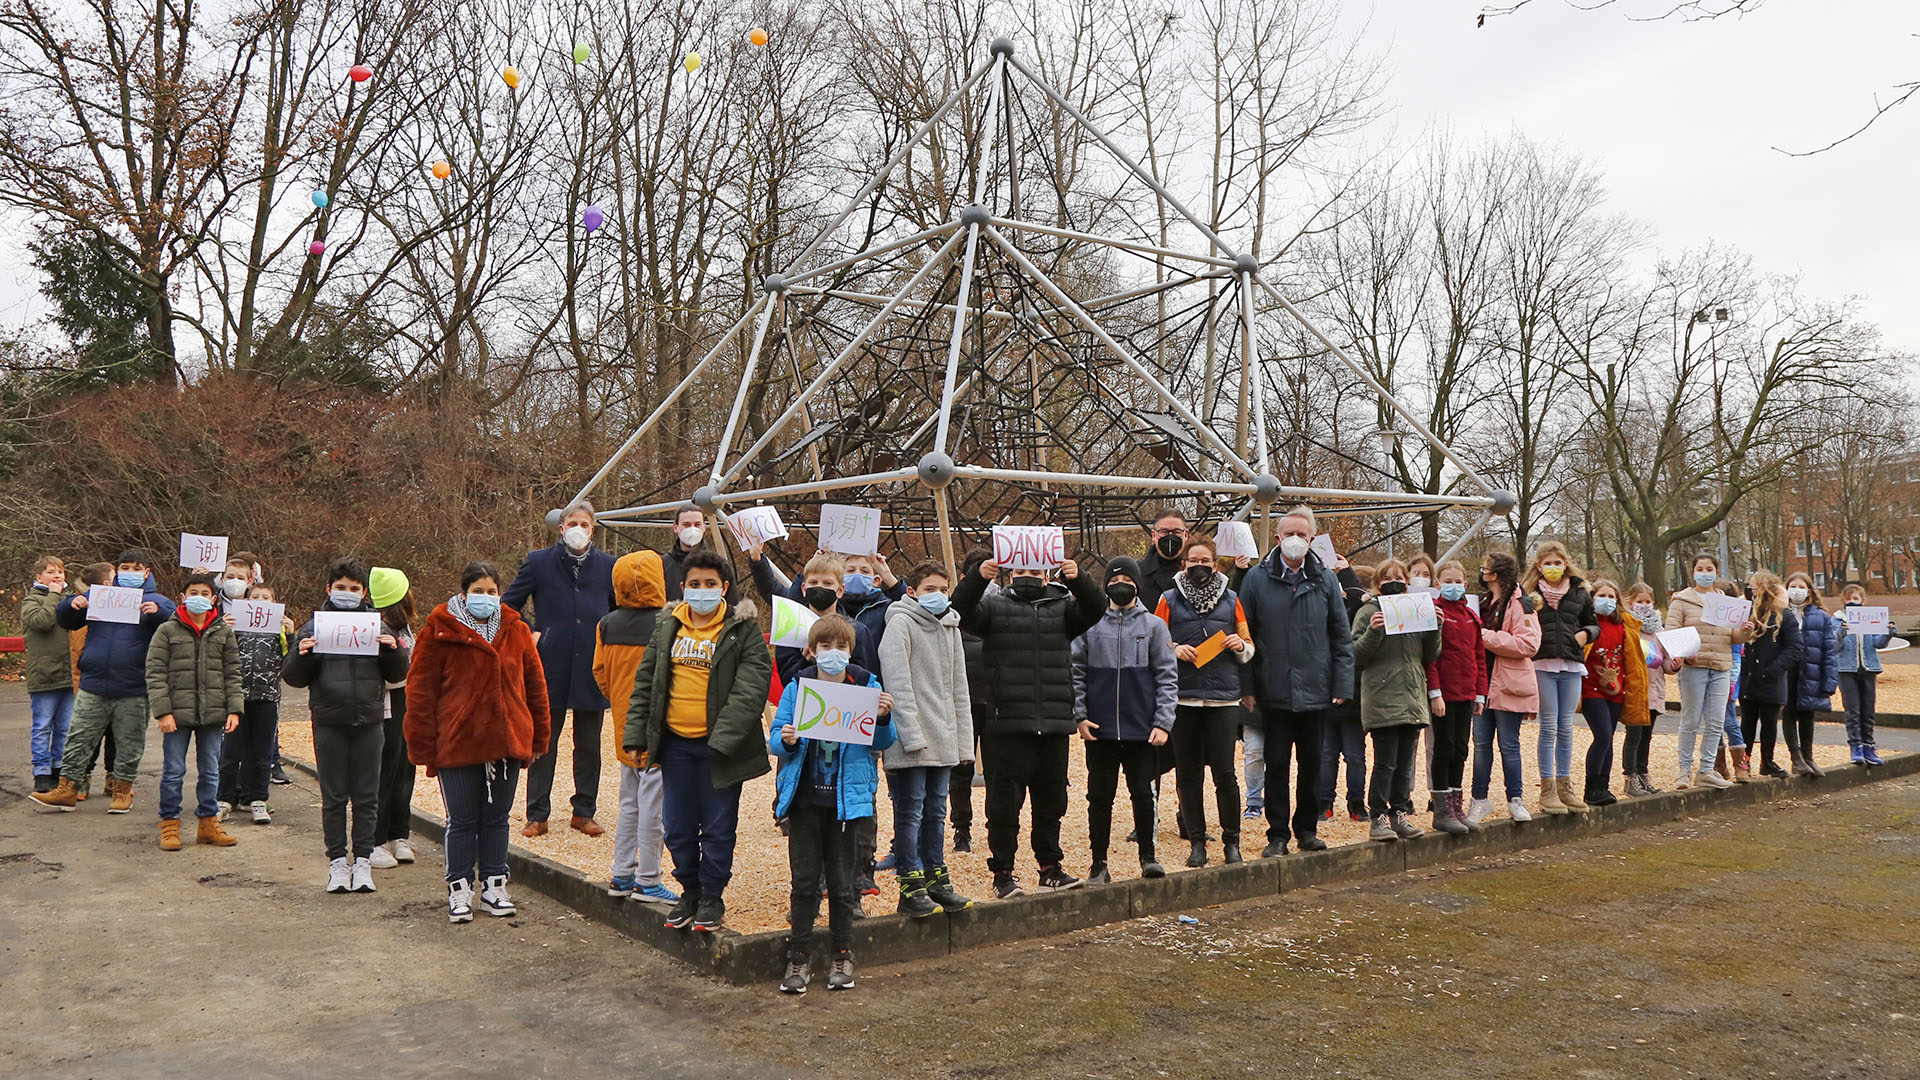 Auf einer Sandfläche eines Schulhofes steht ein großes Klettergerüst aus Metall. Davon haben sich Schülerinnen und Schüler aufgestellt, die meisten tragen Schilder "Danke" in den Händen.